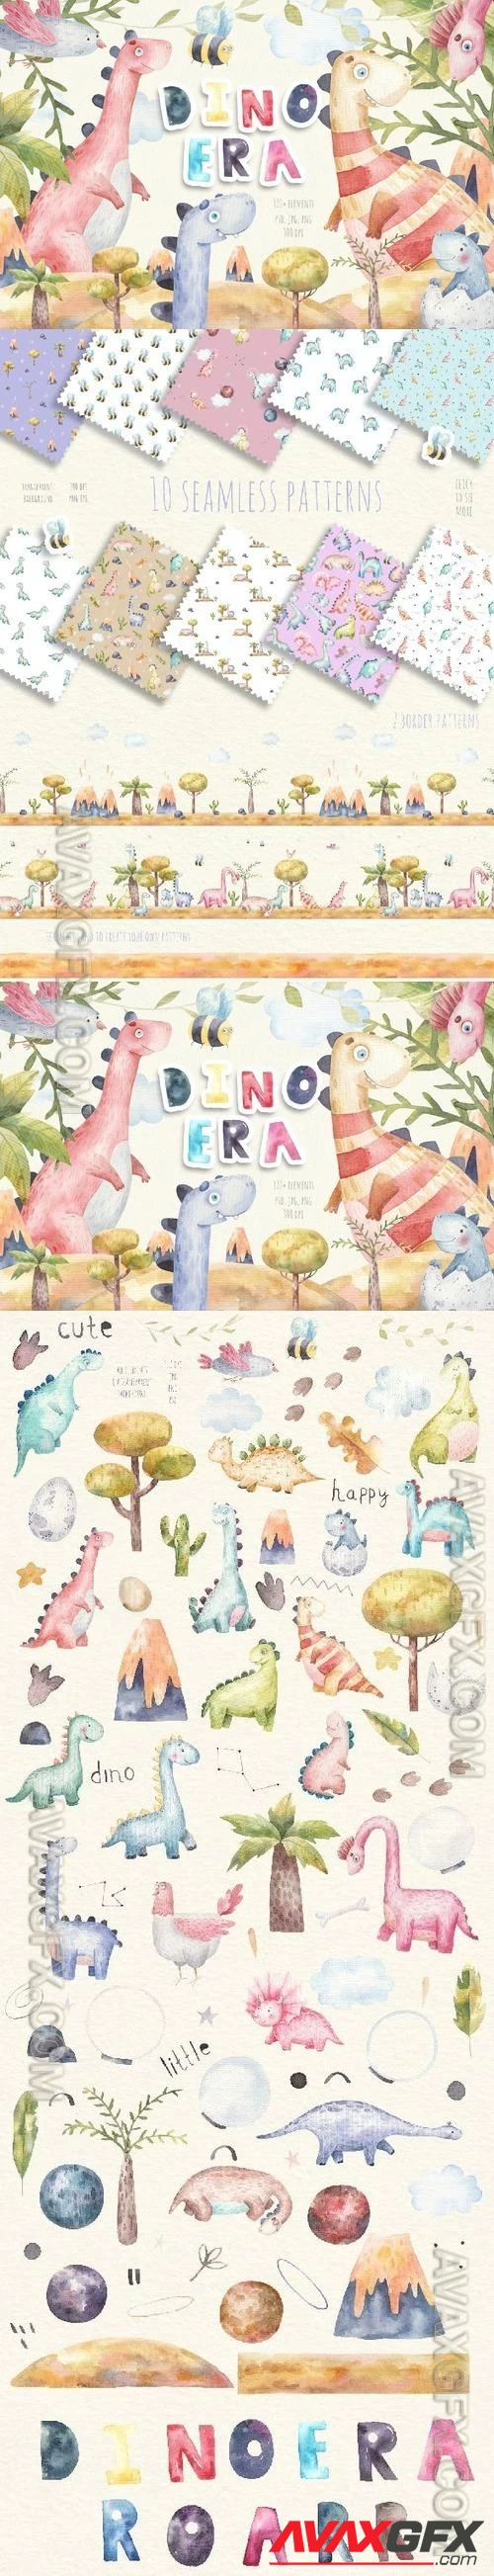 Dinosaur watercolor, dino